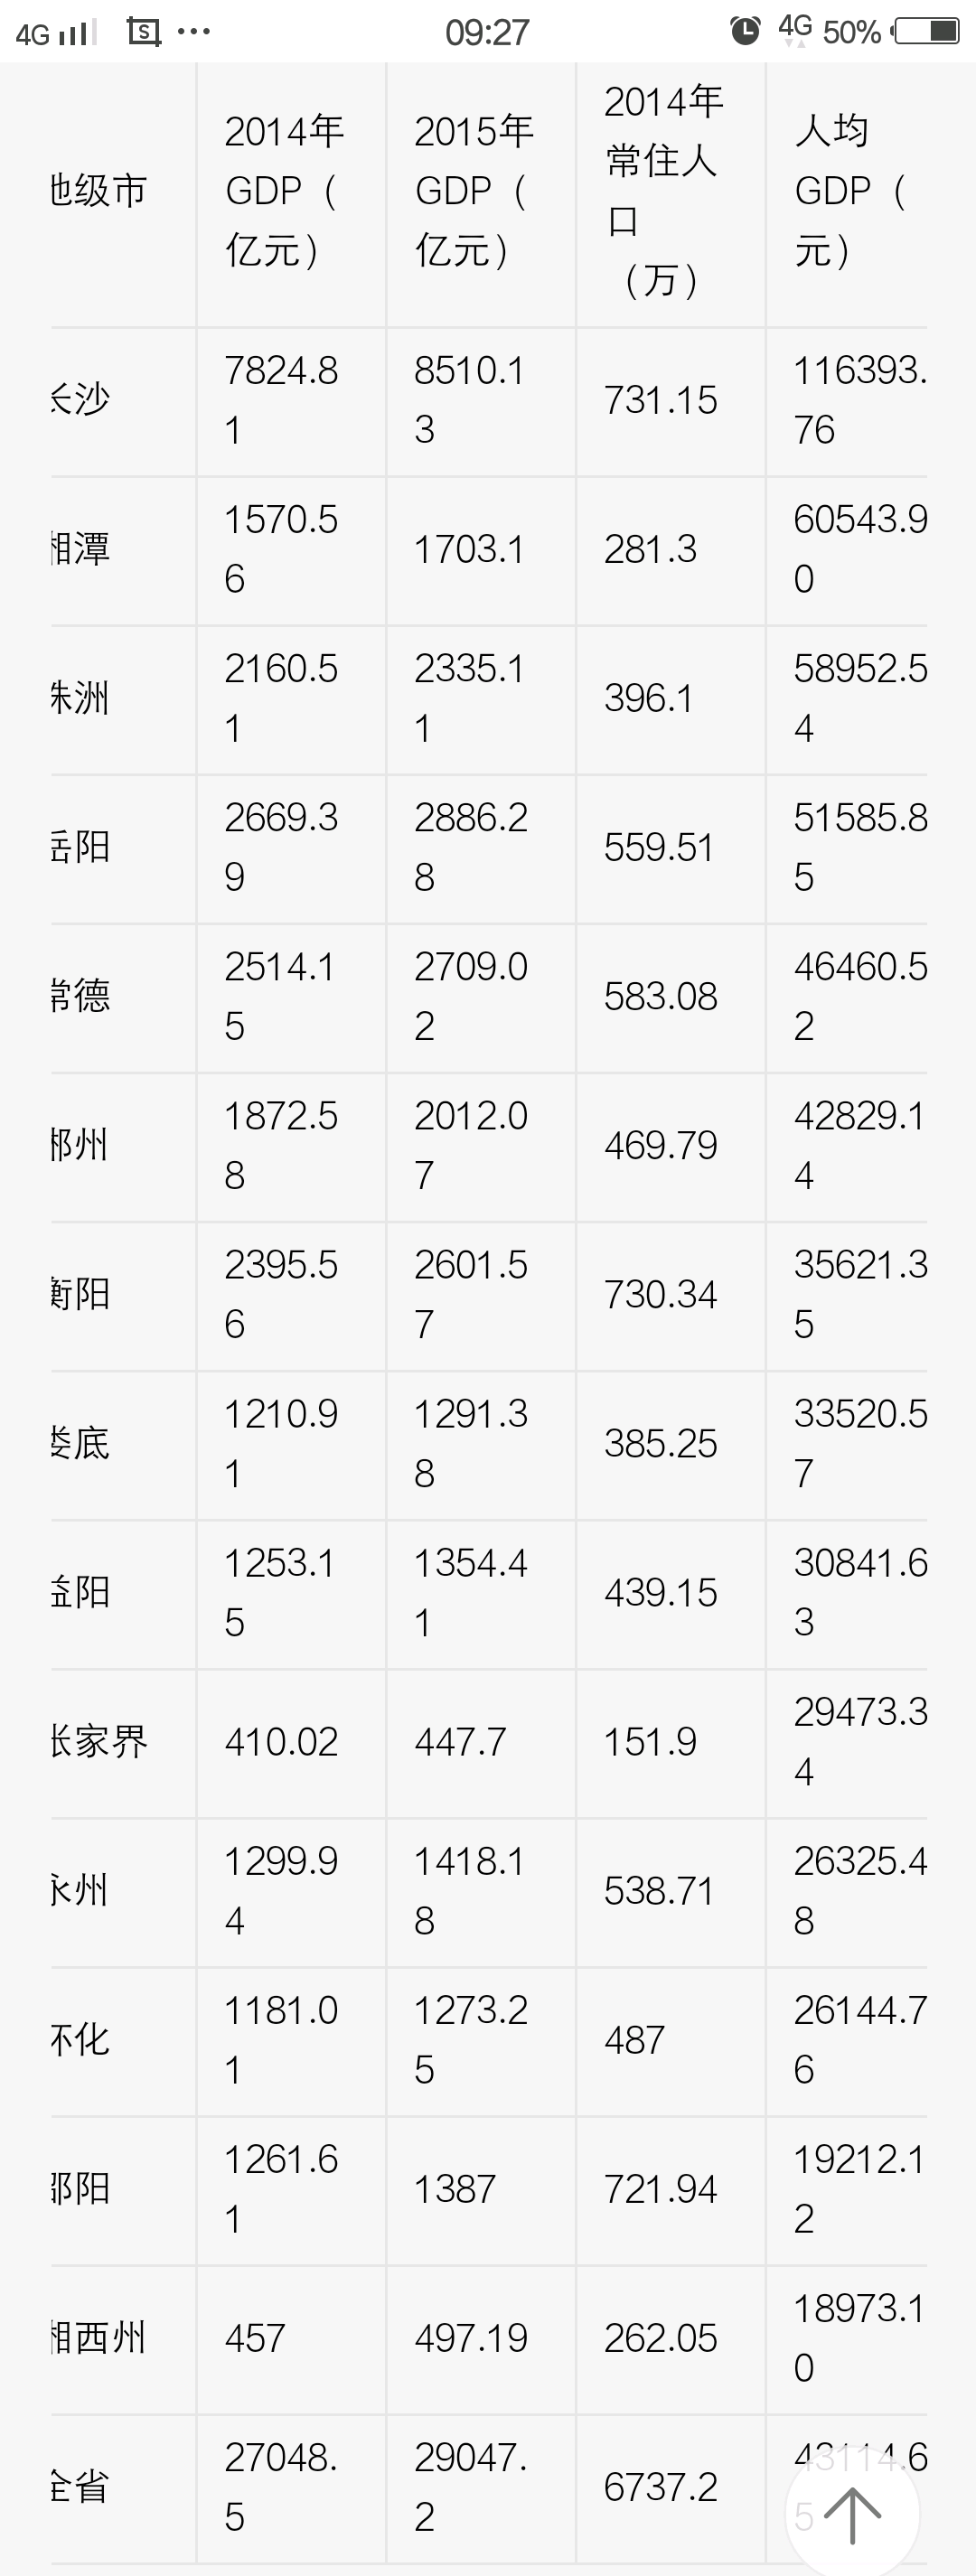 为什么靠近江浙沪的安徽和江西,其人均 GDP 没